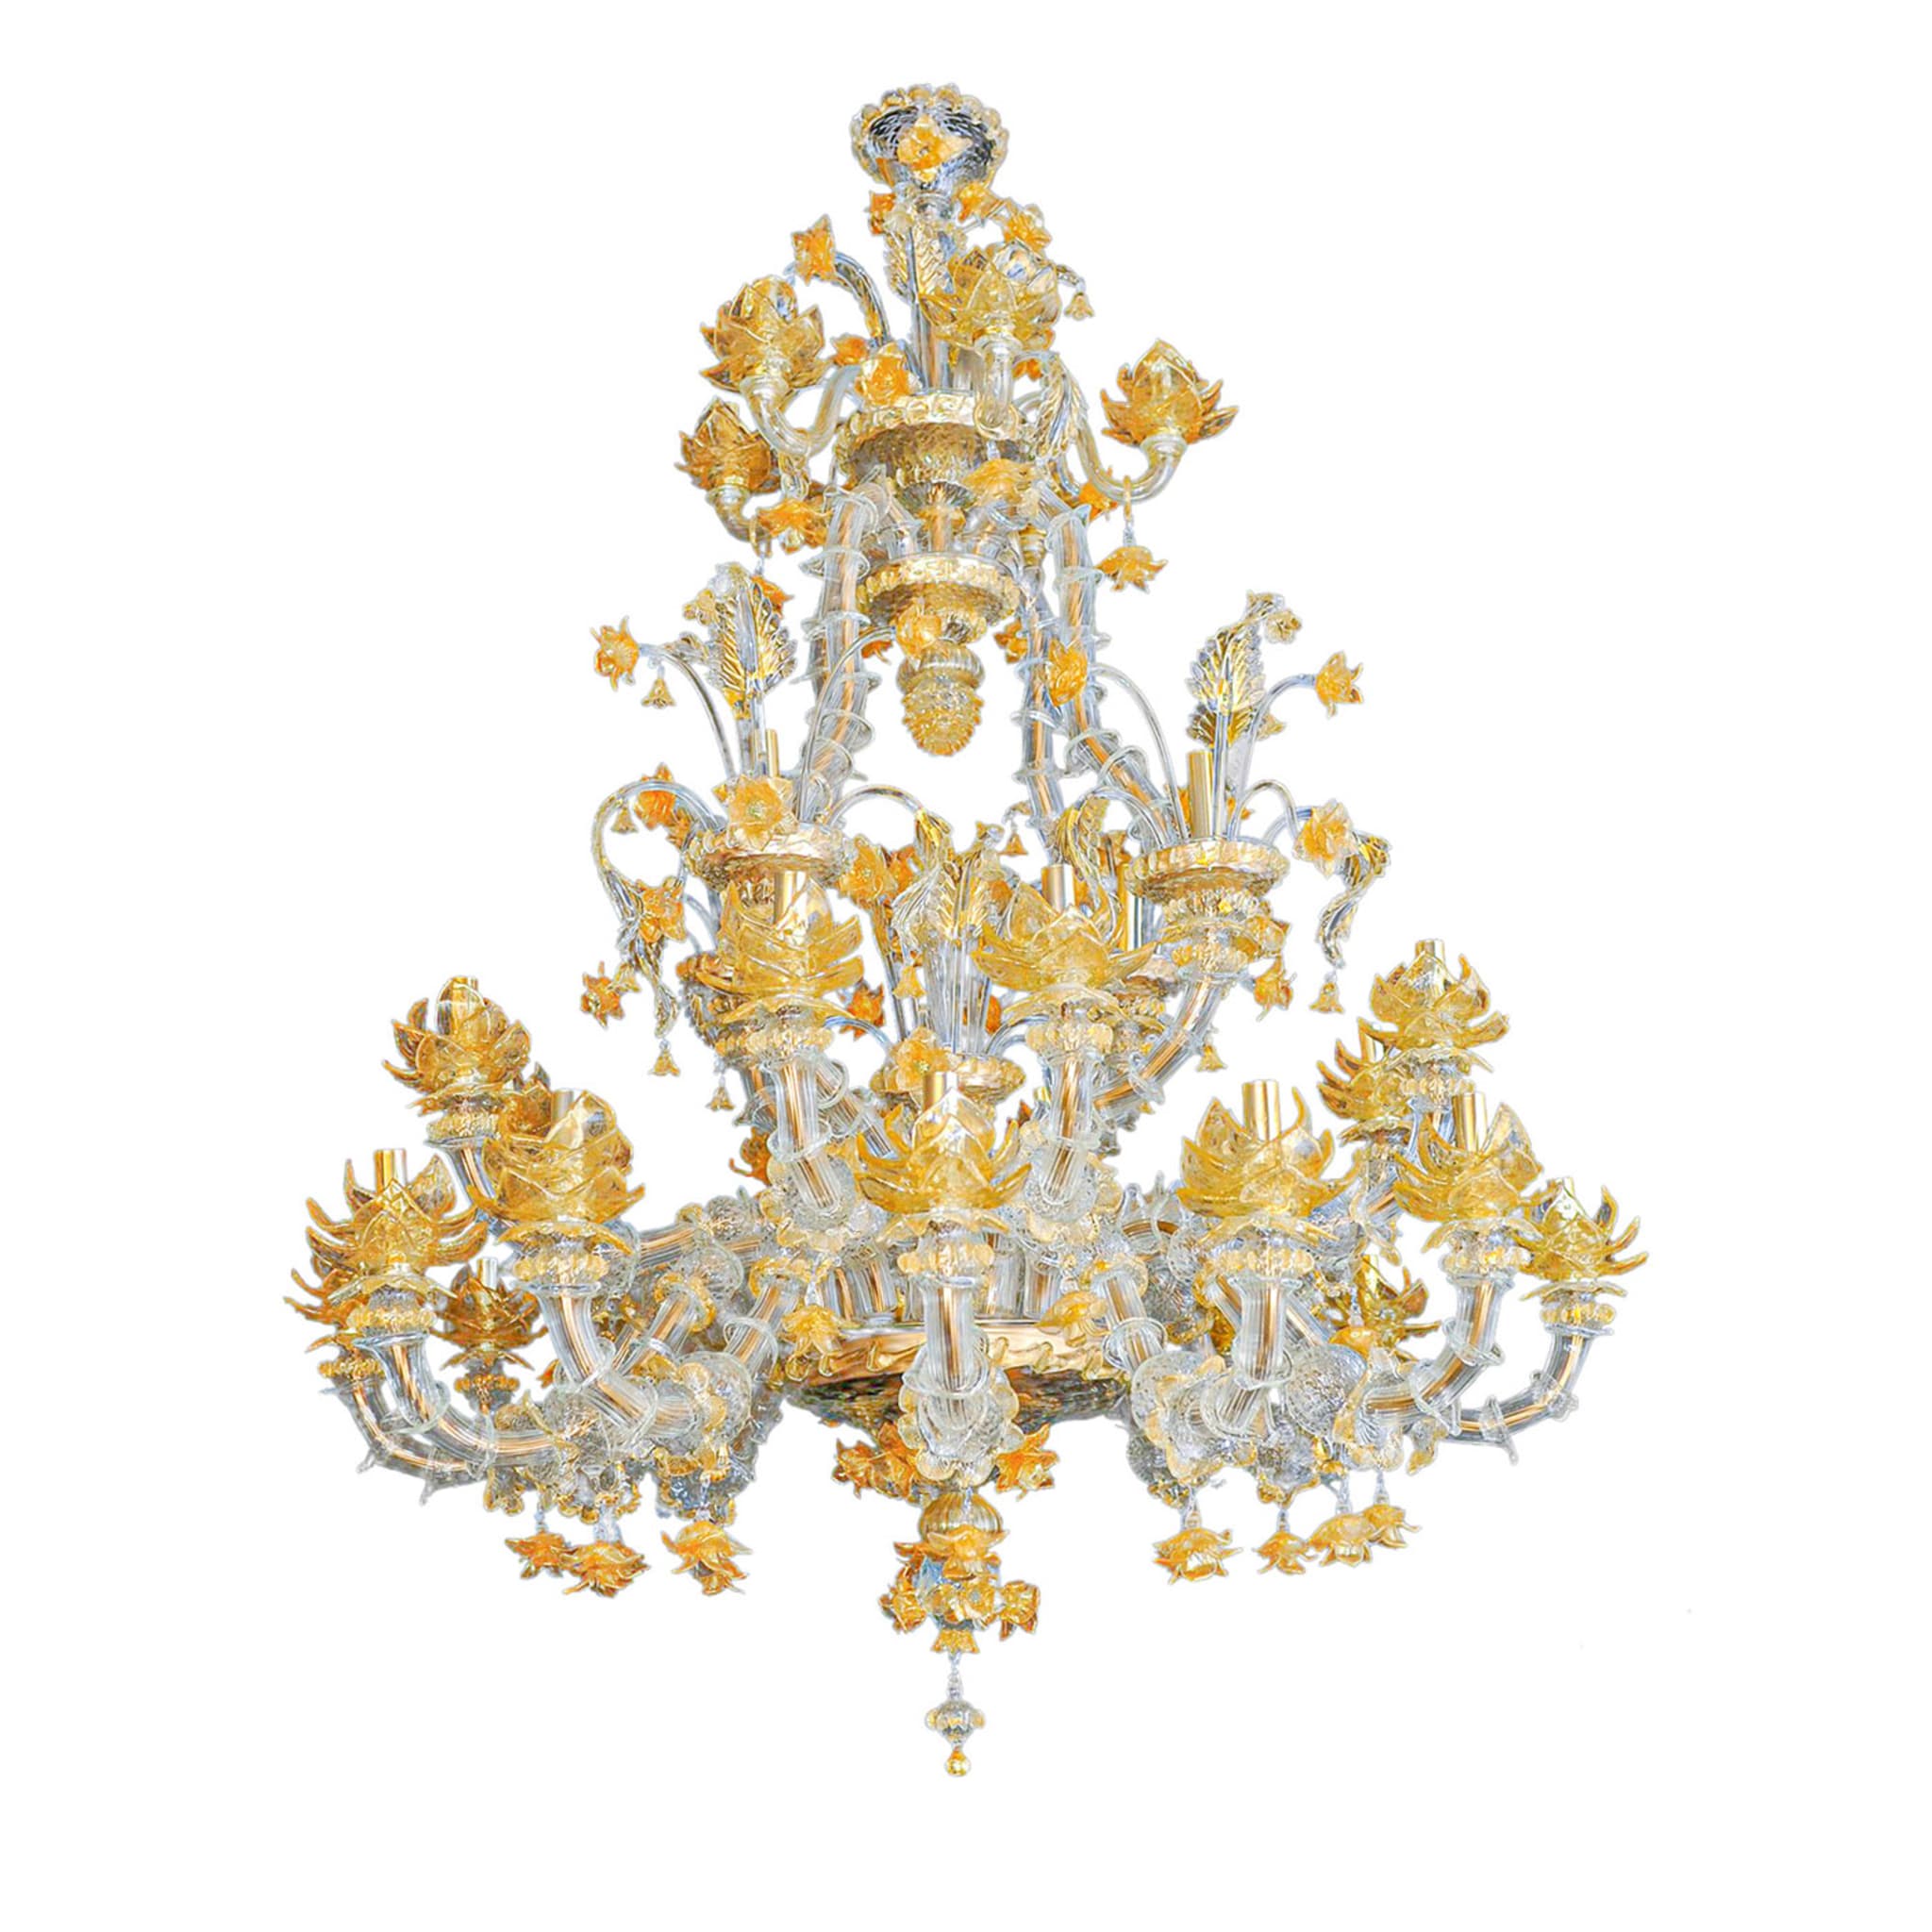 Lampadario in stile Rezzonico in oro e cristallo #4 - Vista principale